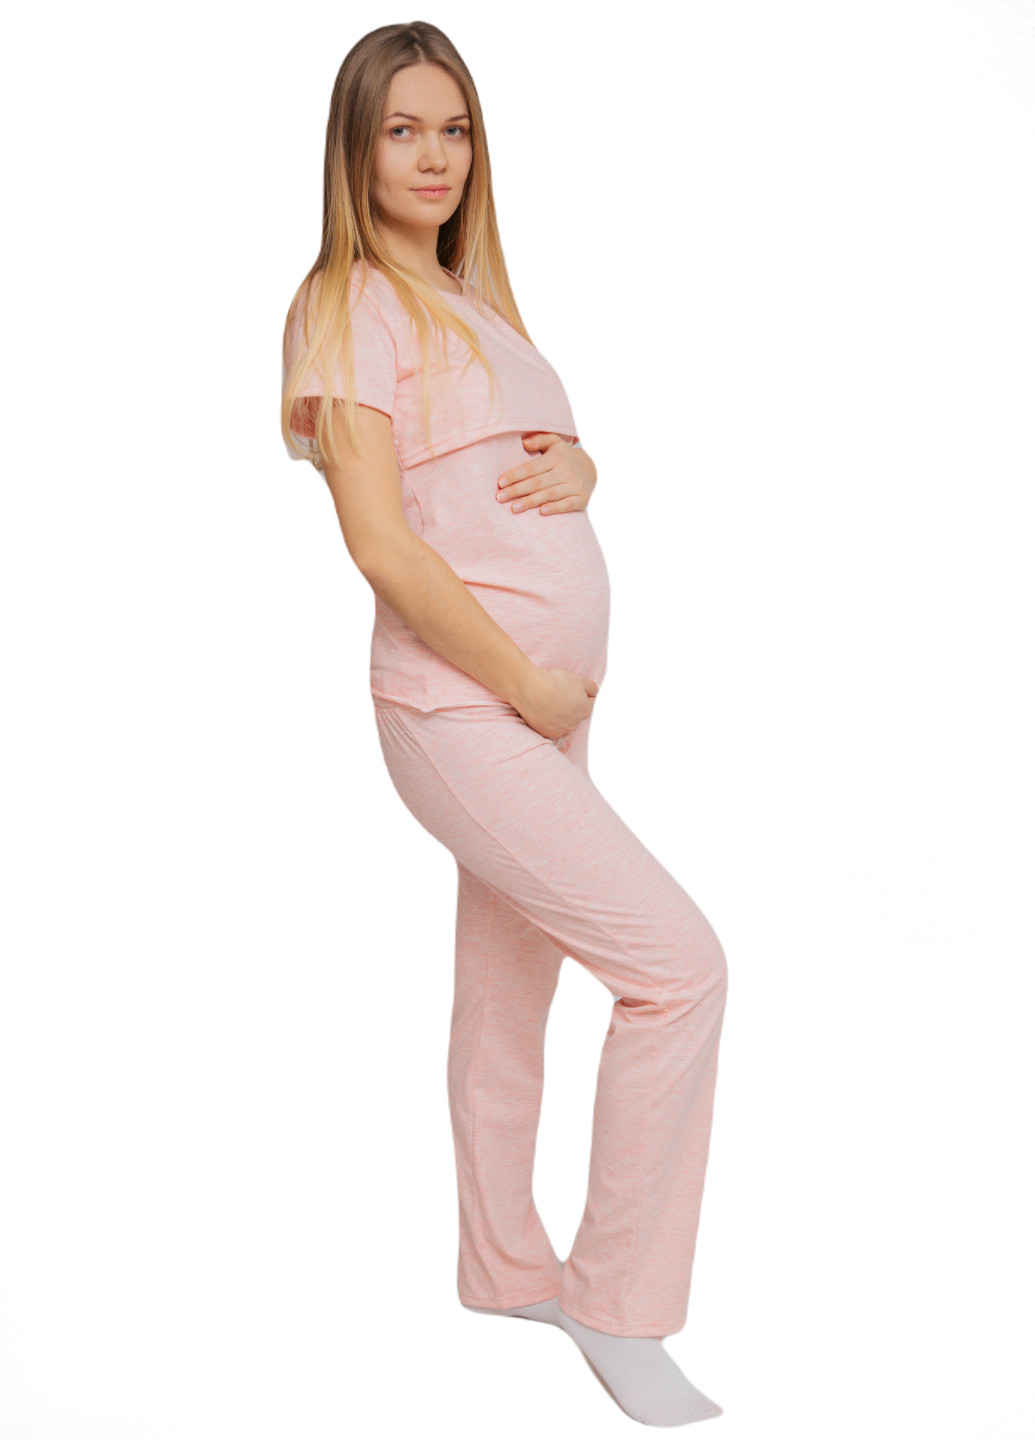 Розовая всесезон 88296038829(55)06 пижама для беременных и кормящих с секретом для кормления (футболка + брюки) розовая футболка + брюки HN Рита